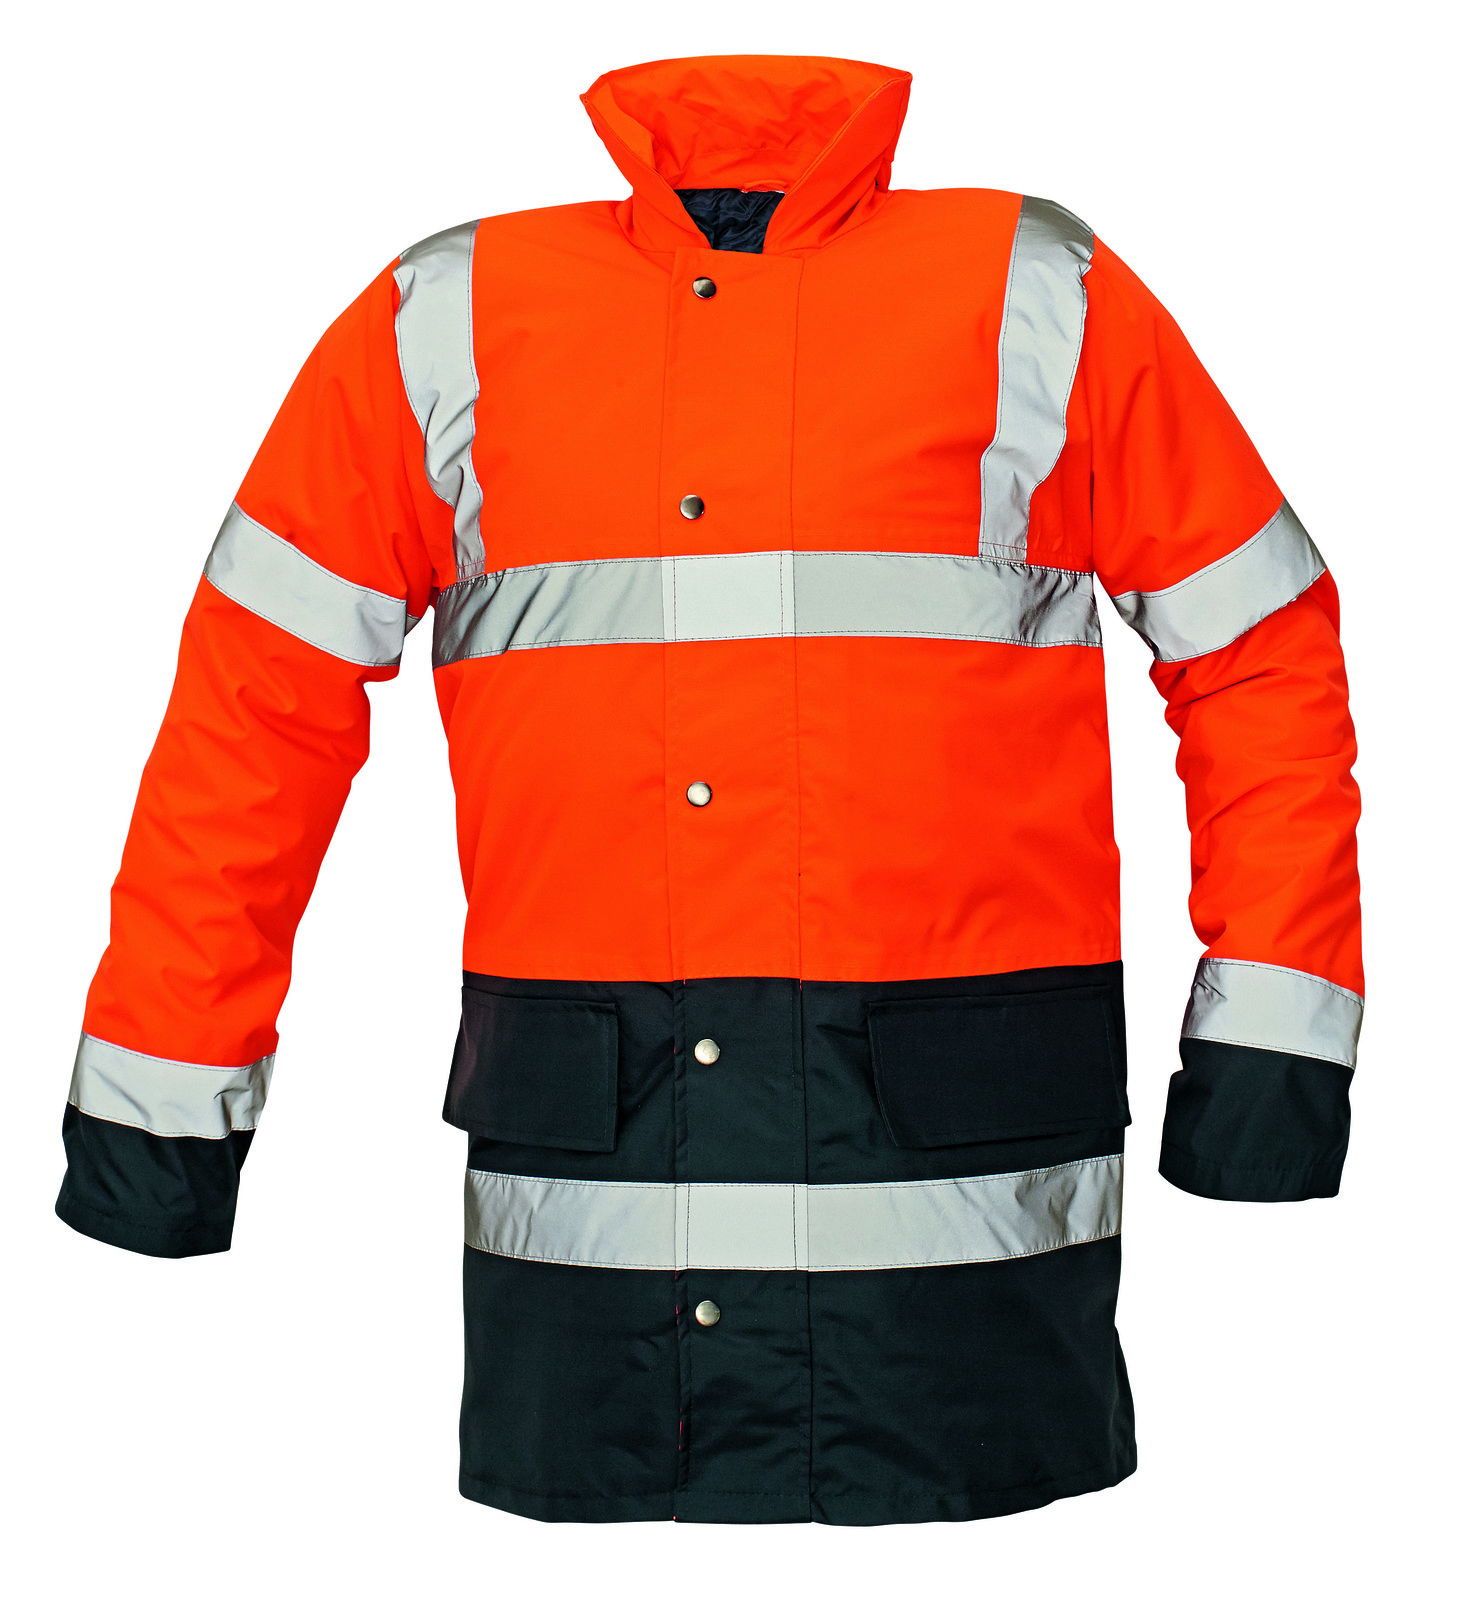 Ľahká zateplená reflexná bunda Sefton - veľkosť: L, farba: oranžová/navy